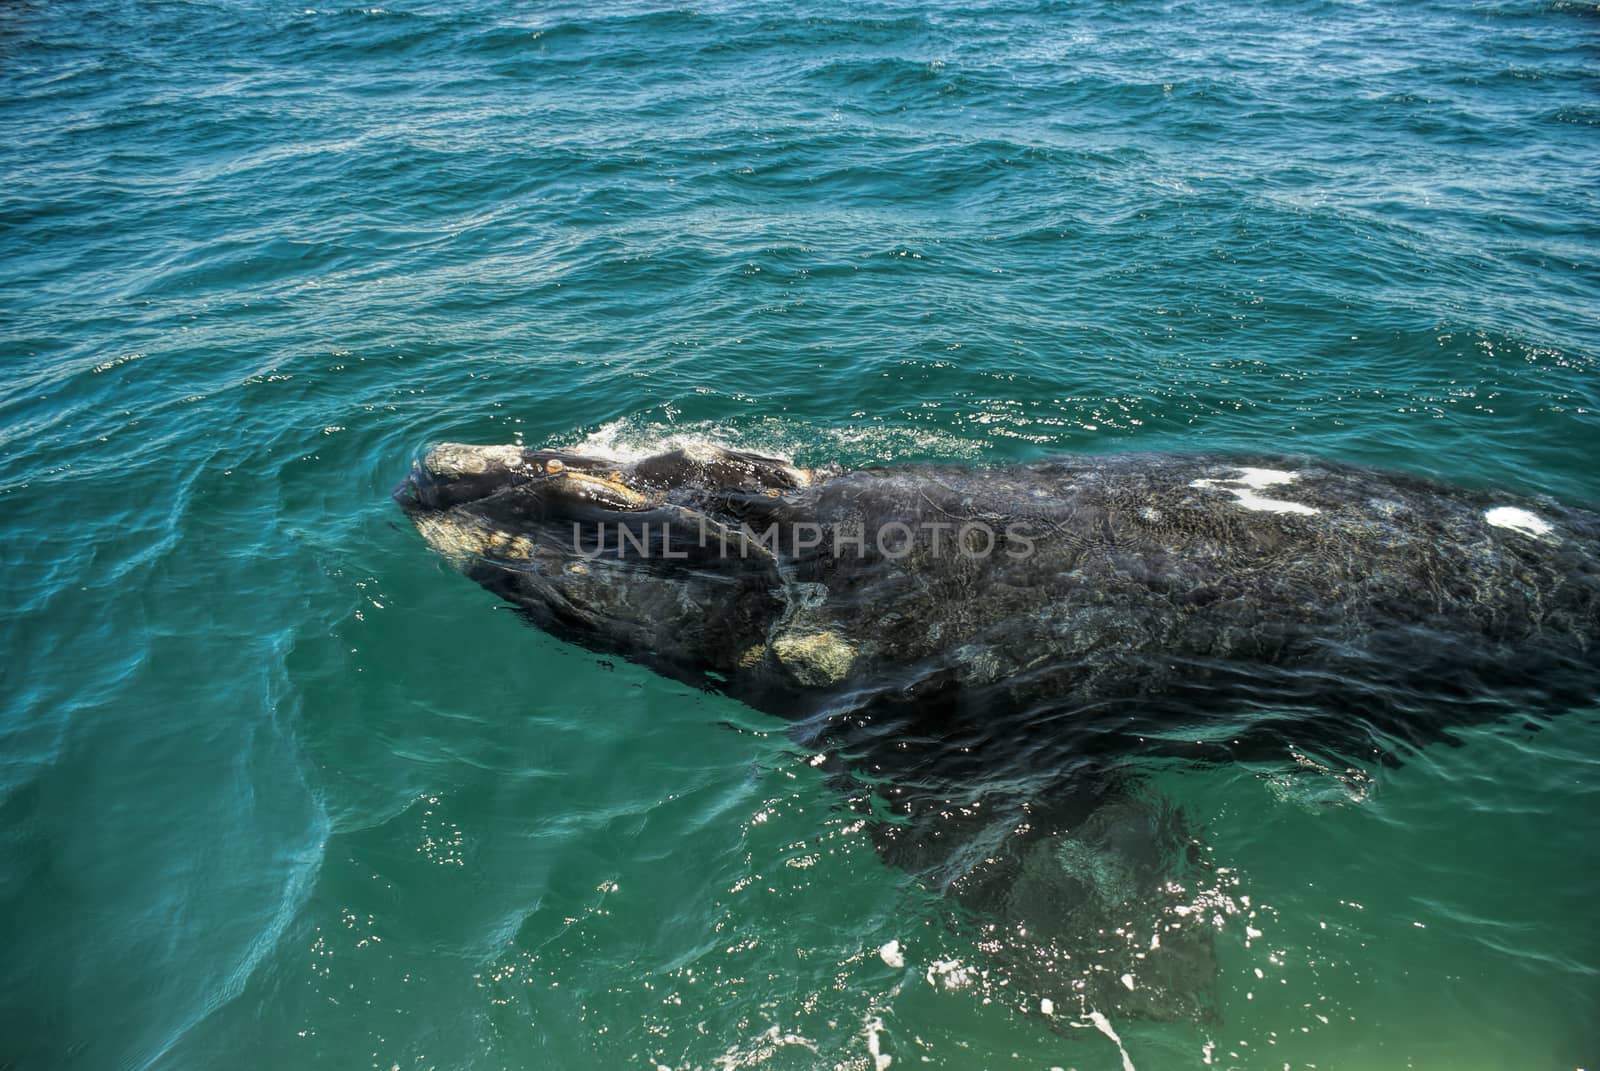 Whale by MichalKnitl